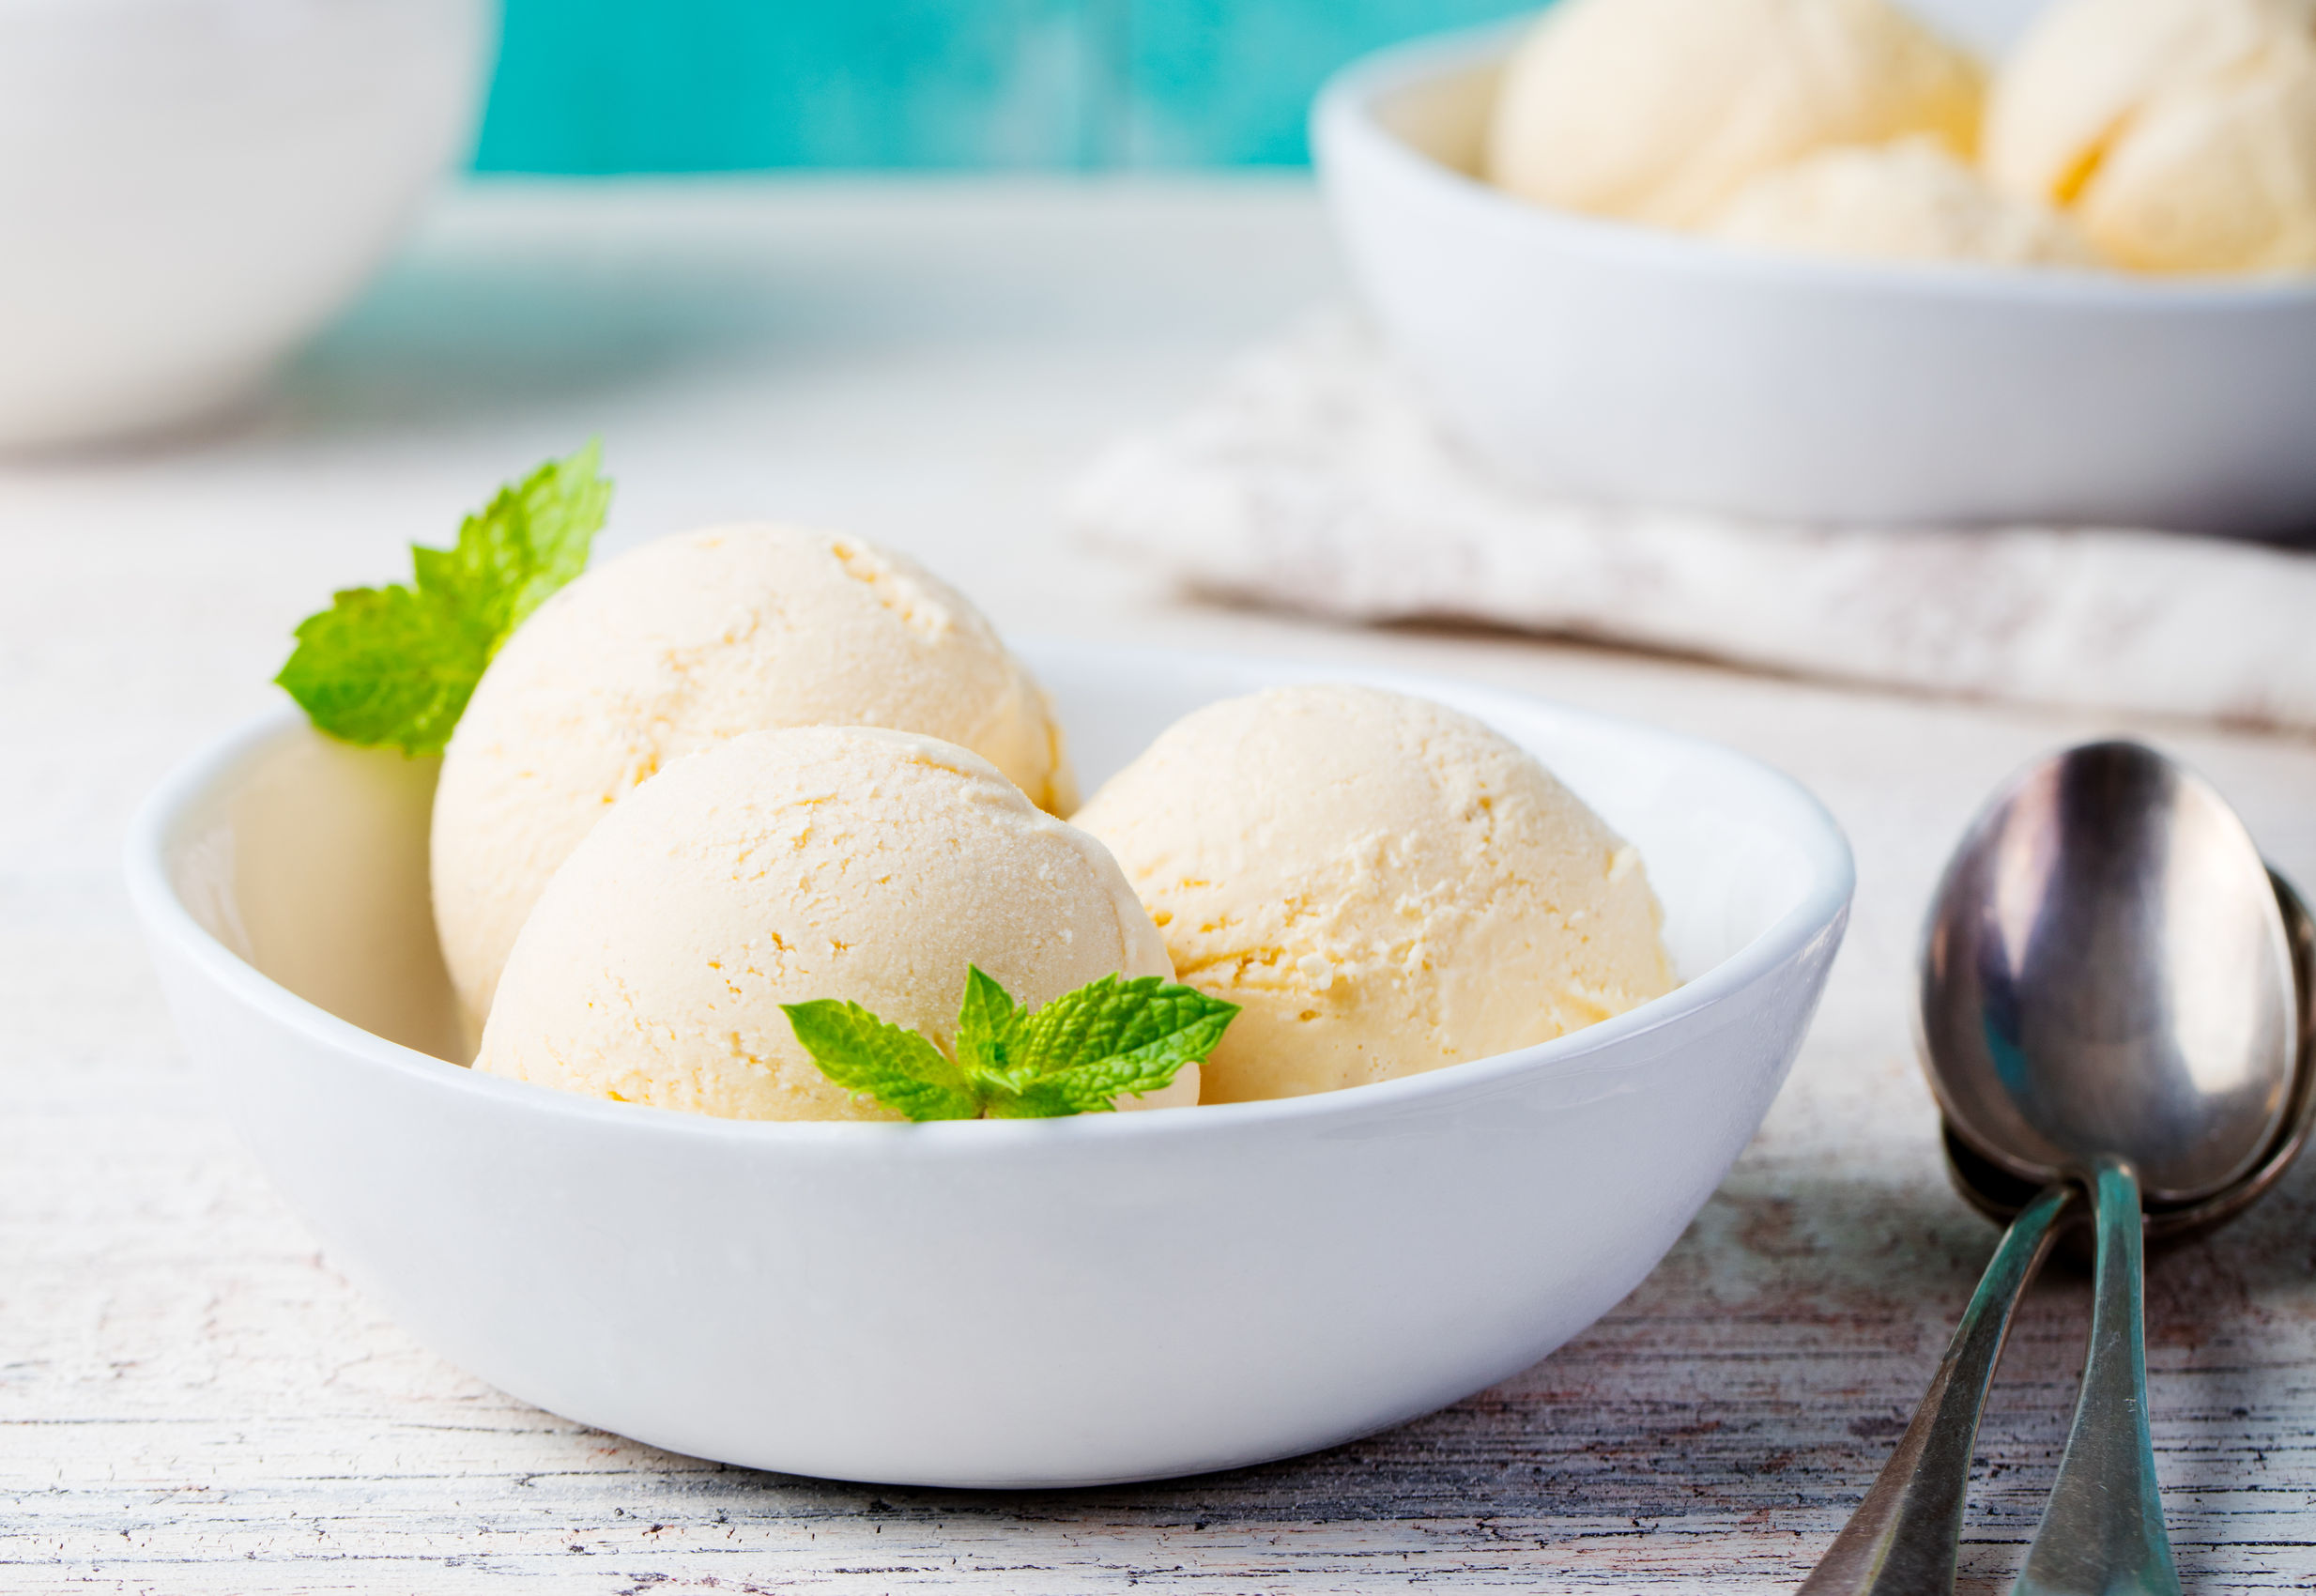 Cel mai bun desert pentru zile de vară! Rețetă simplă pentru o înghețată de casă delicioasă 